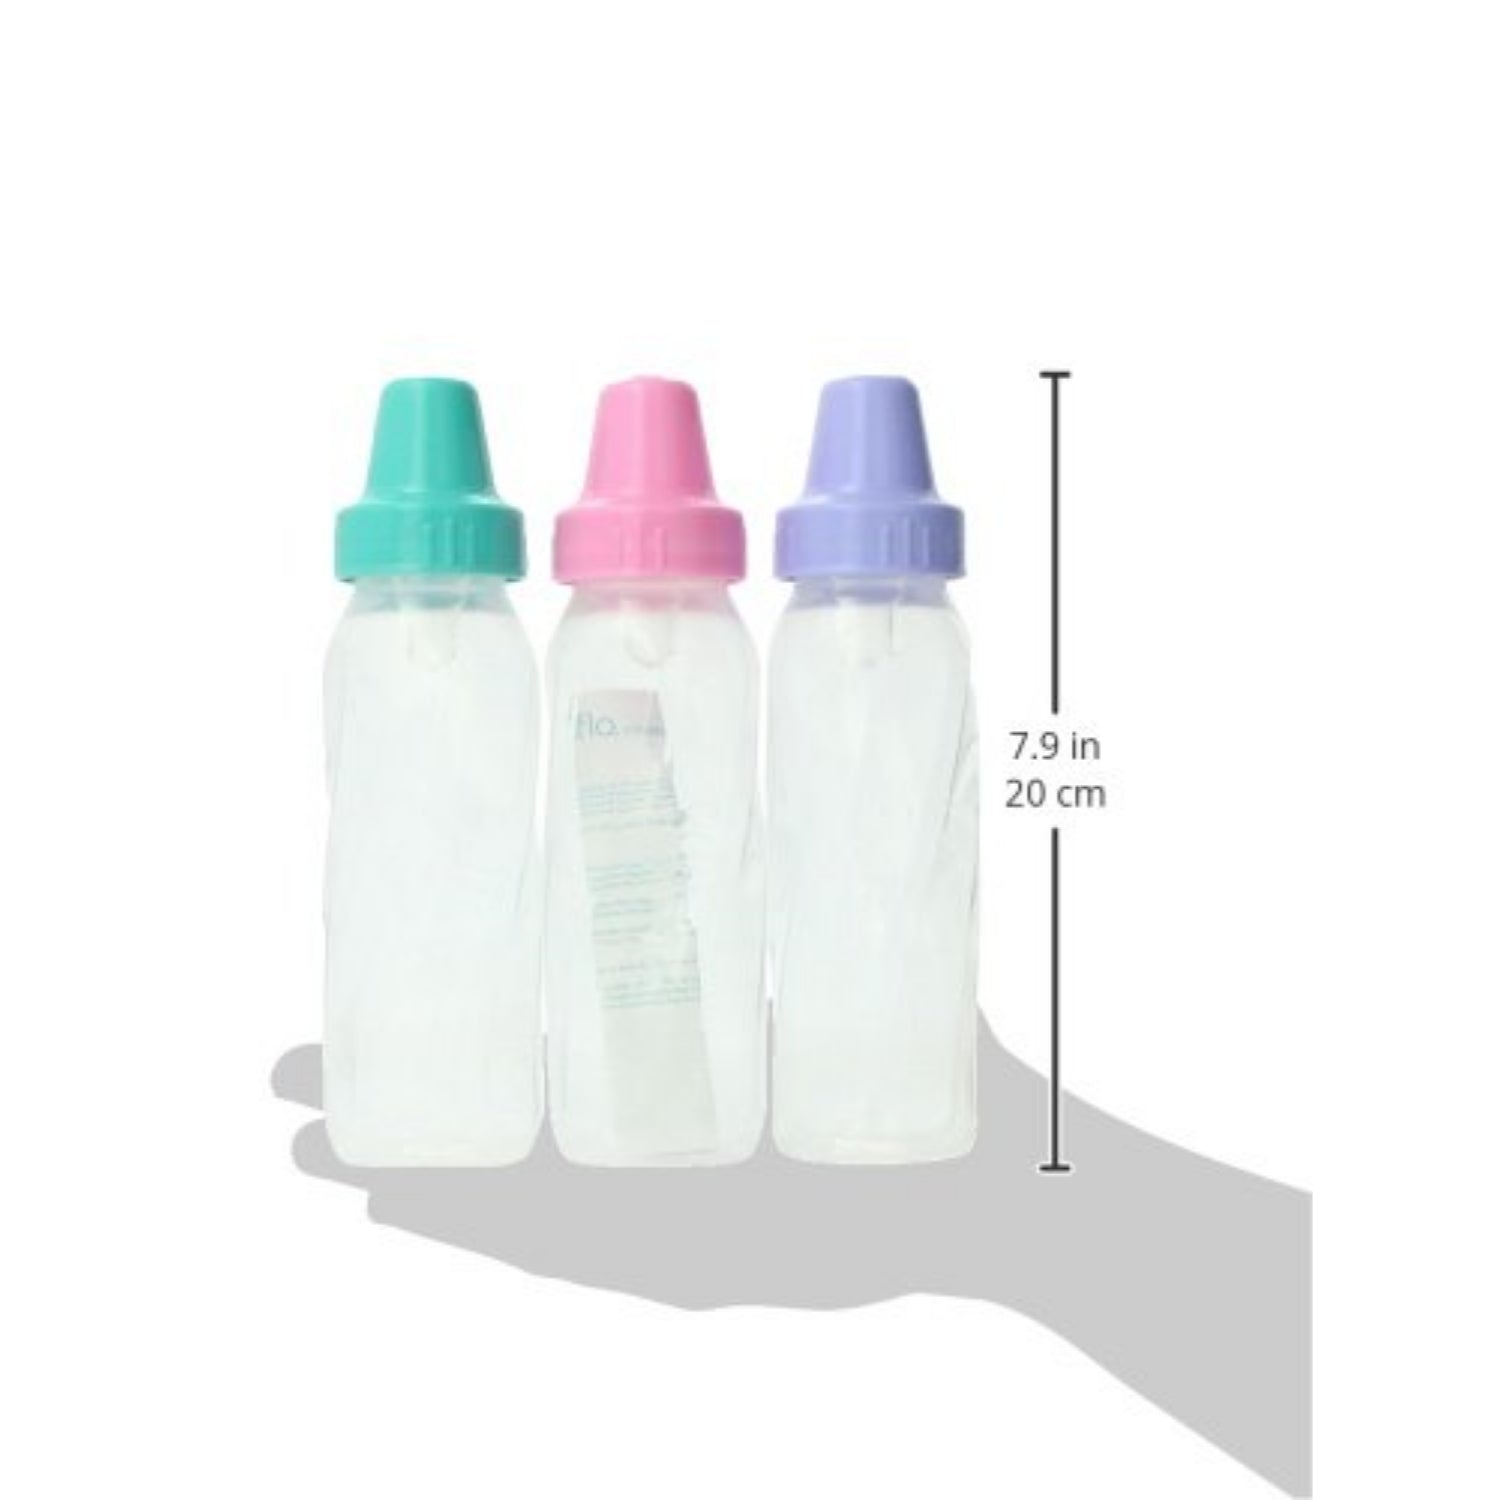 Classic baby bottle SCF686/61